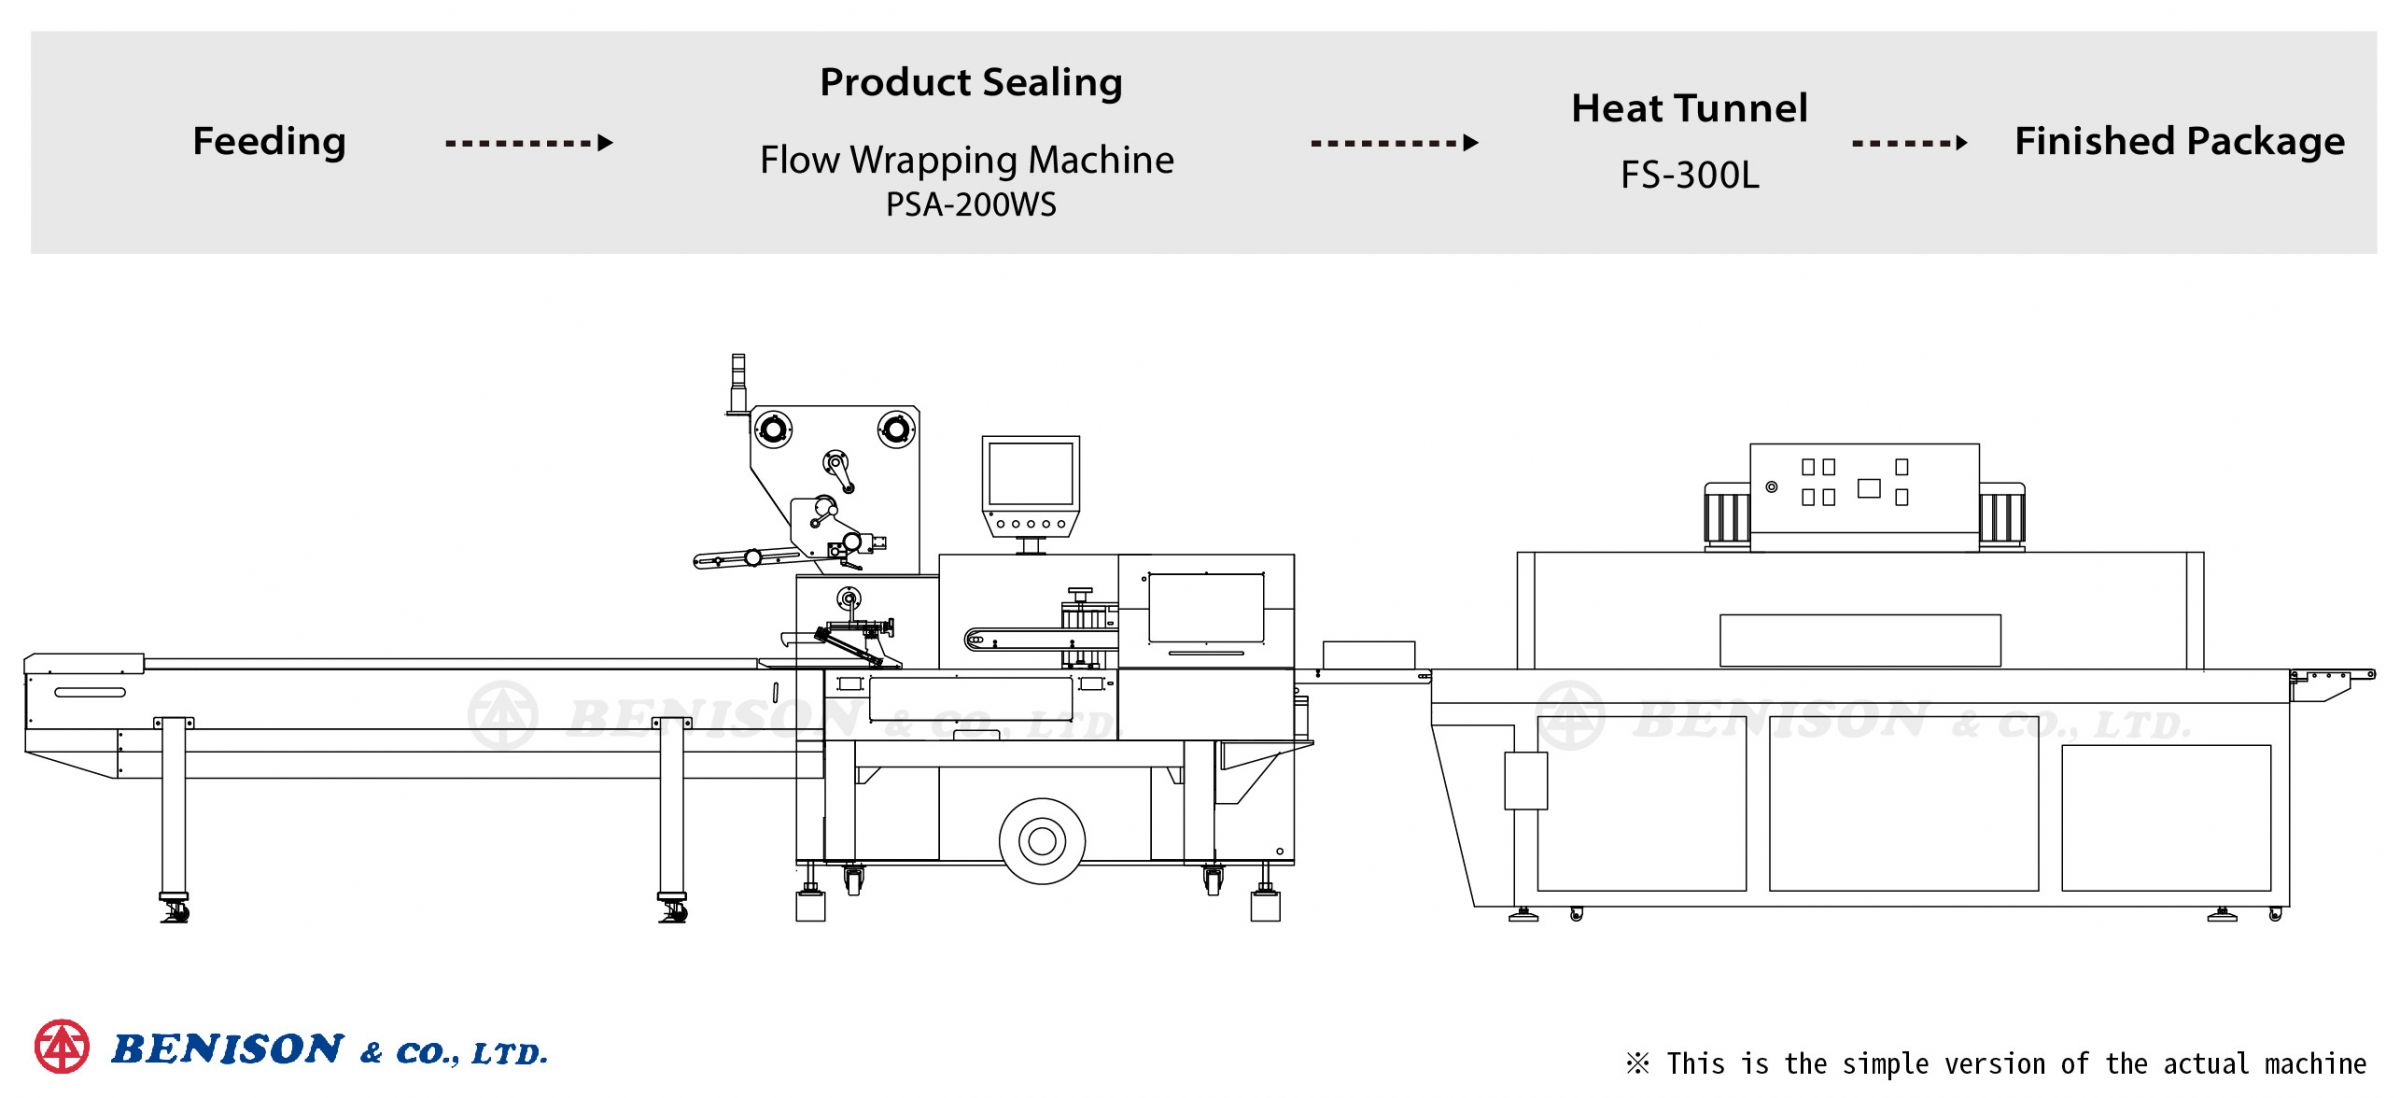 Machine de conditionnement sous film PSA-200WS + tunnel de chaleur FS-300L pour la solution de couvercle de prise